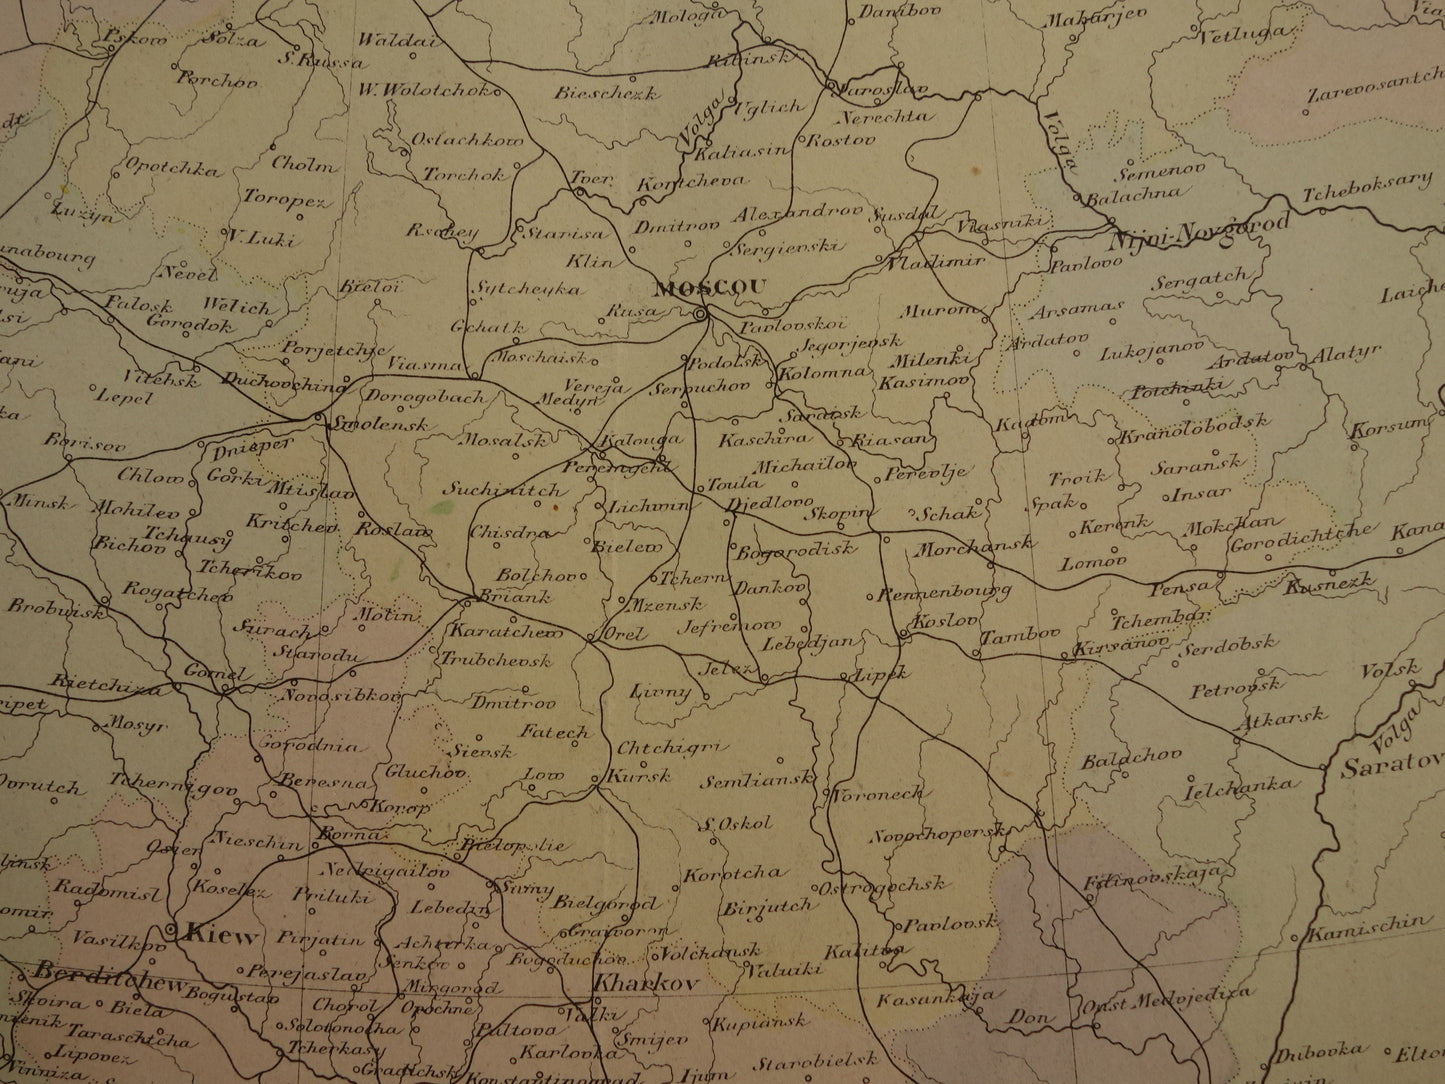 RUSLAND Oude kaart van Rusland Oekraïne Moskou uit het jaar 1896 historische landkaart Russische Rijk Europa oude vintage kaarten